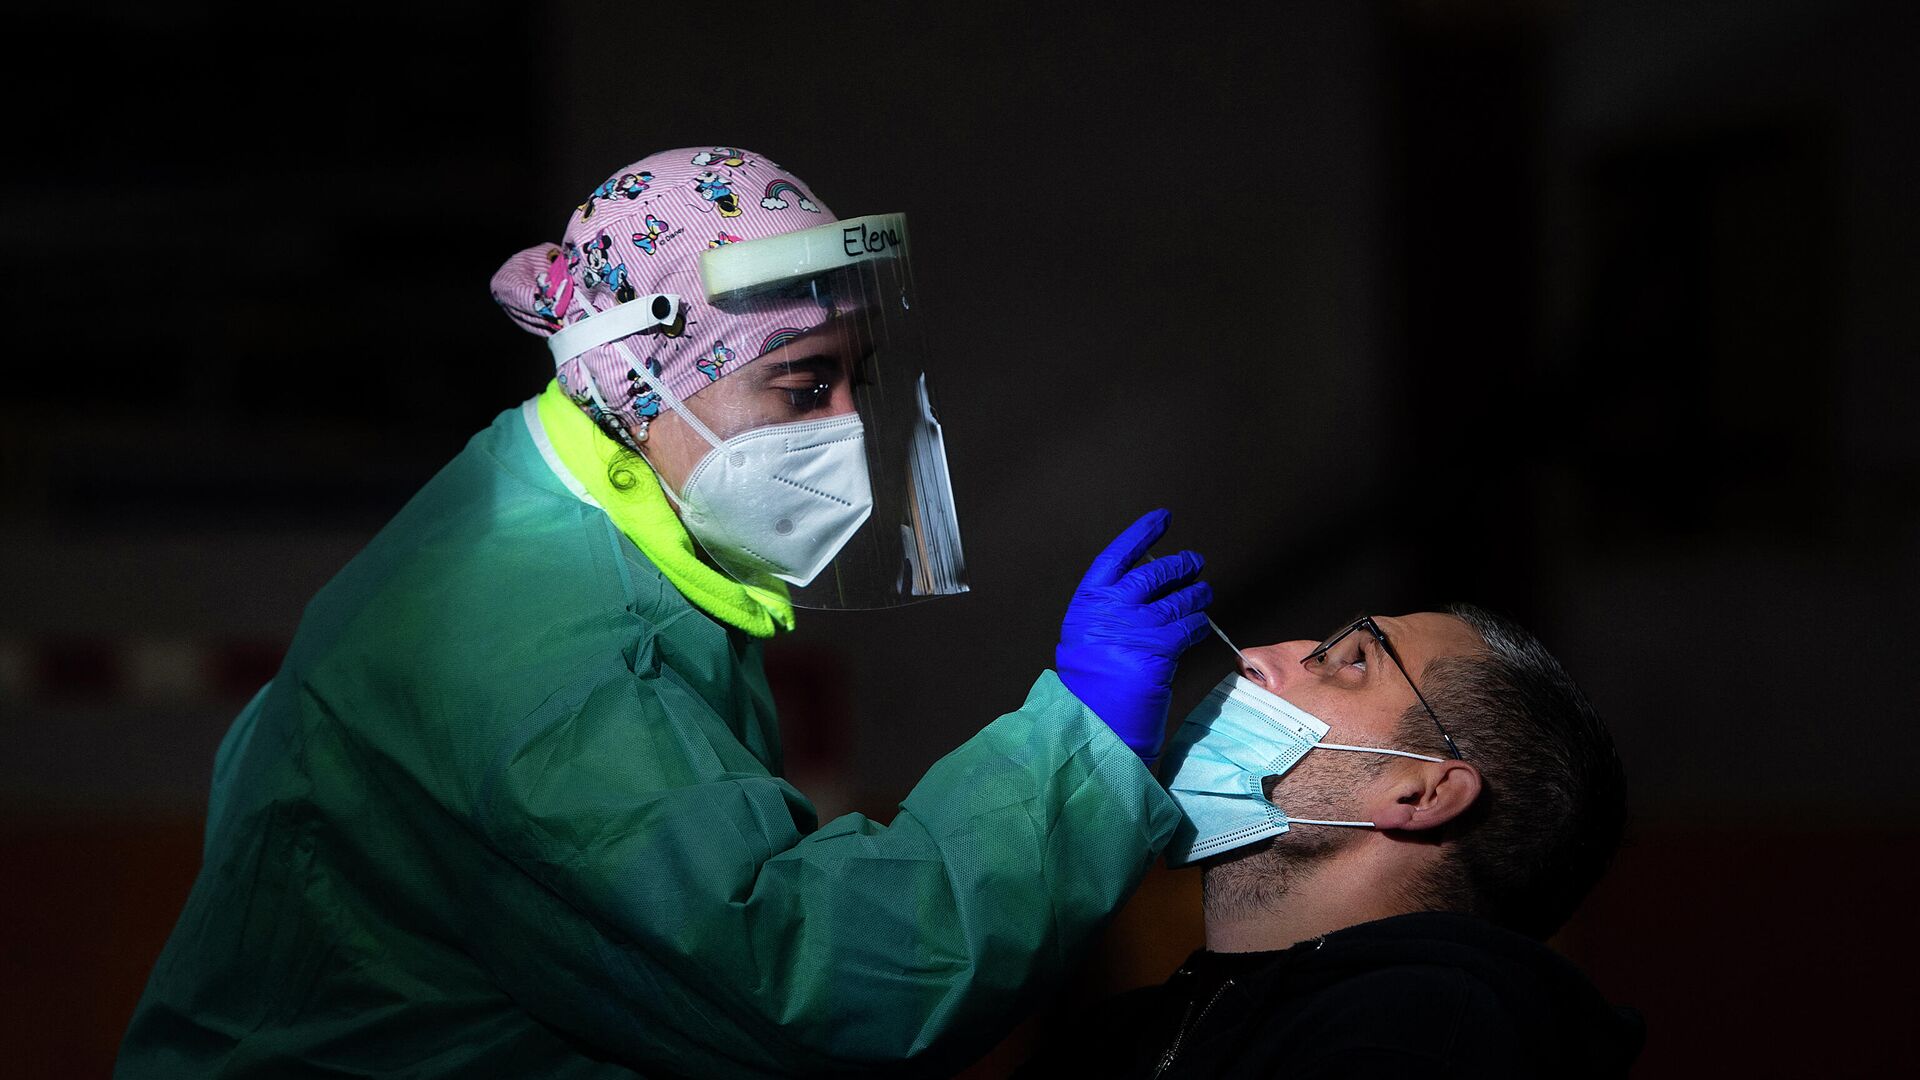 Una trabajadora de la salud realiza una prueba rápida de antígeno para COVID-19 durante una detección masiva de coronavirus en Tui, noroeste de España, el 8 de diciembre de 2020. - Sputnik Mundo, 1920, 12.02.2021